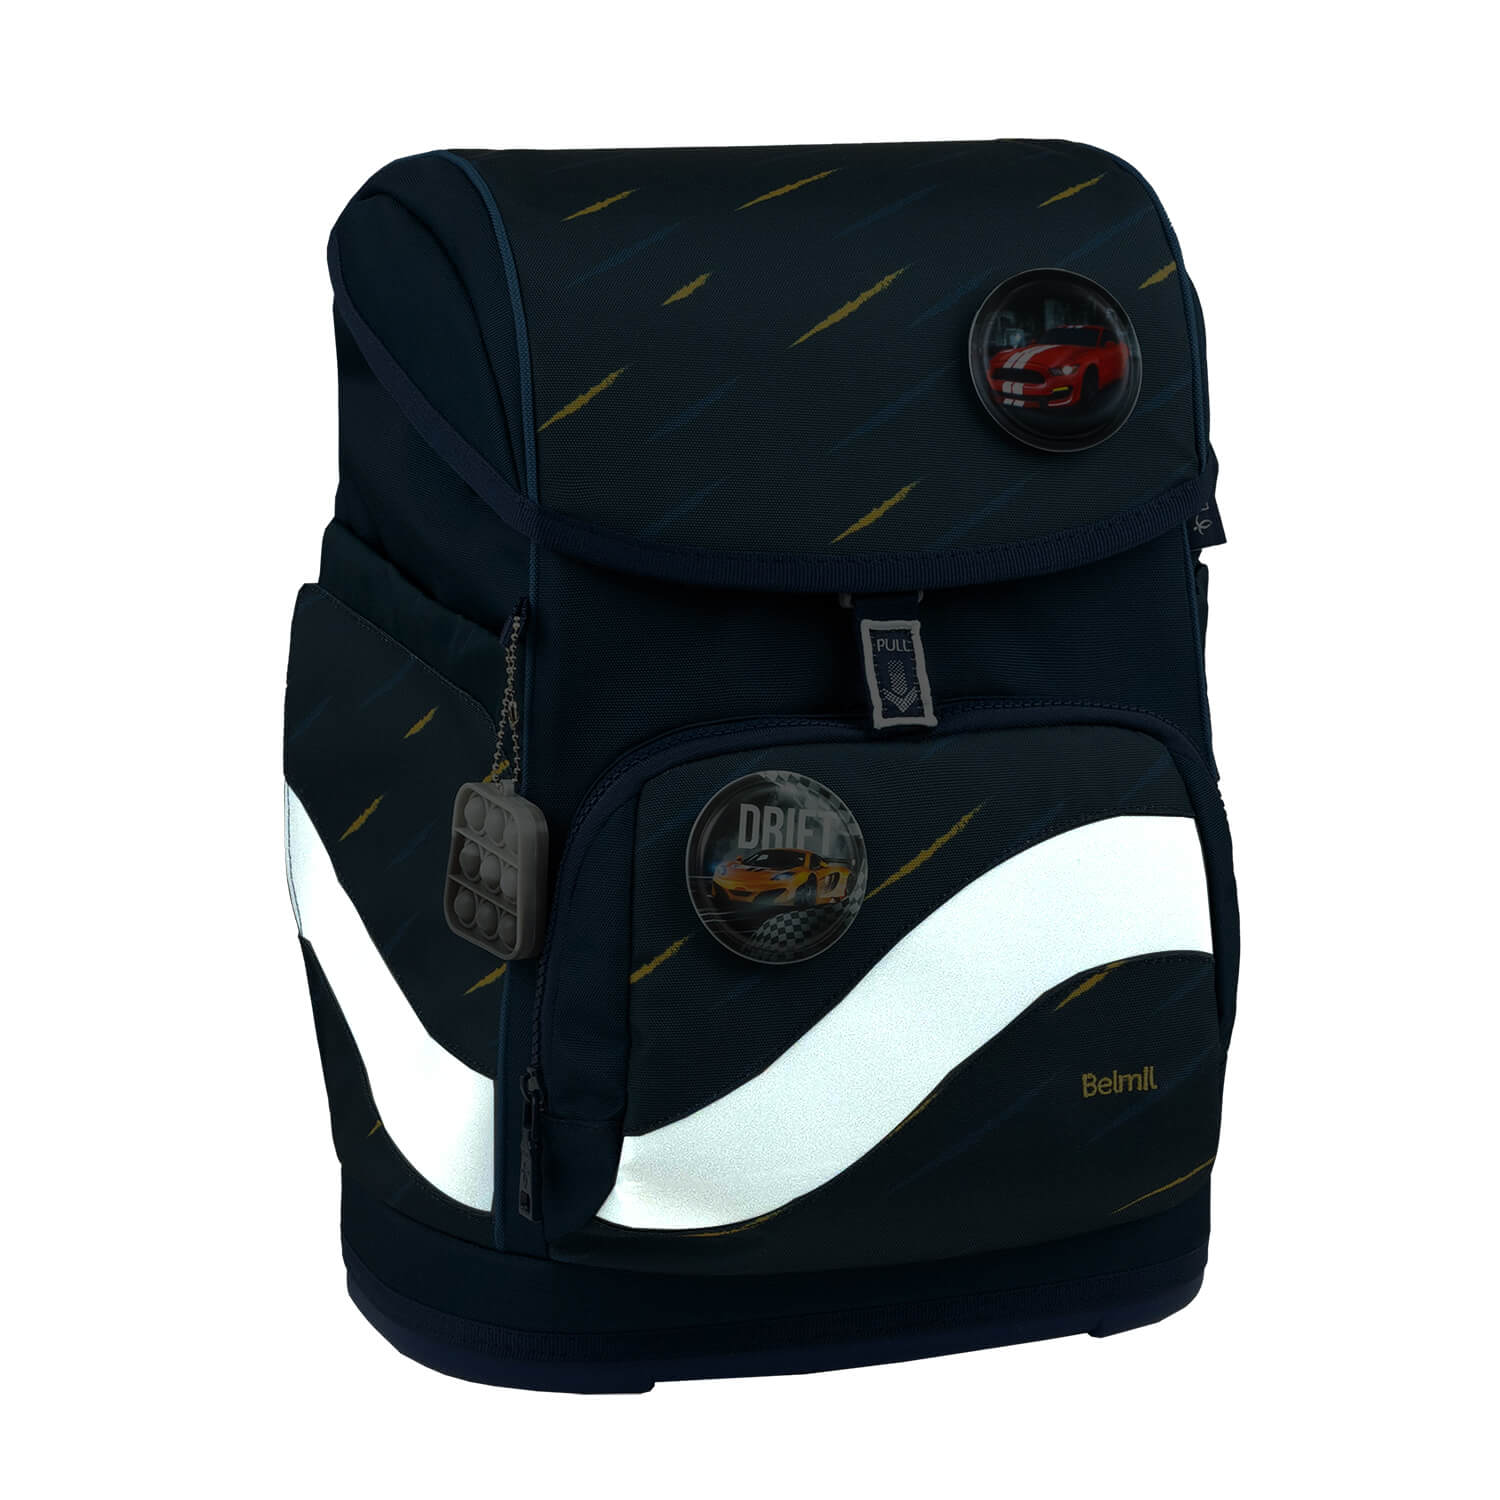 Smarty Plus Orion Blue Schoolbag set 5pcs.